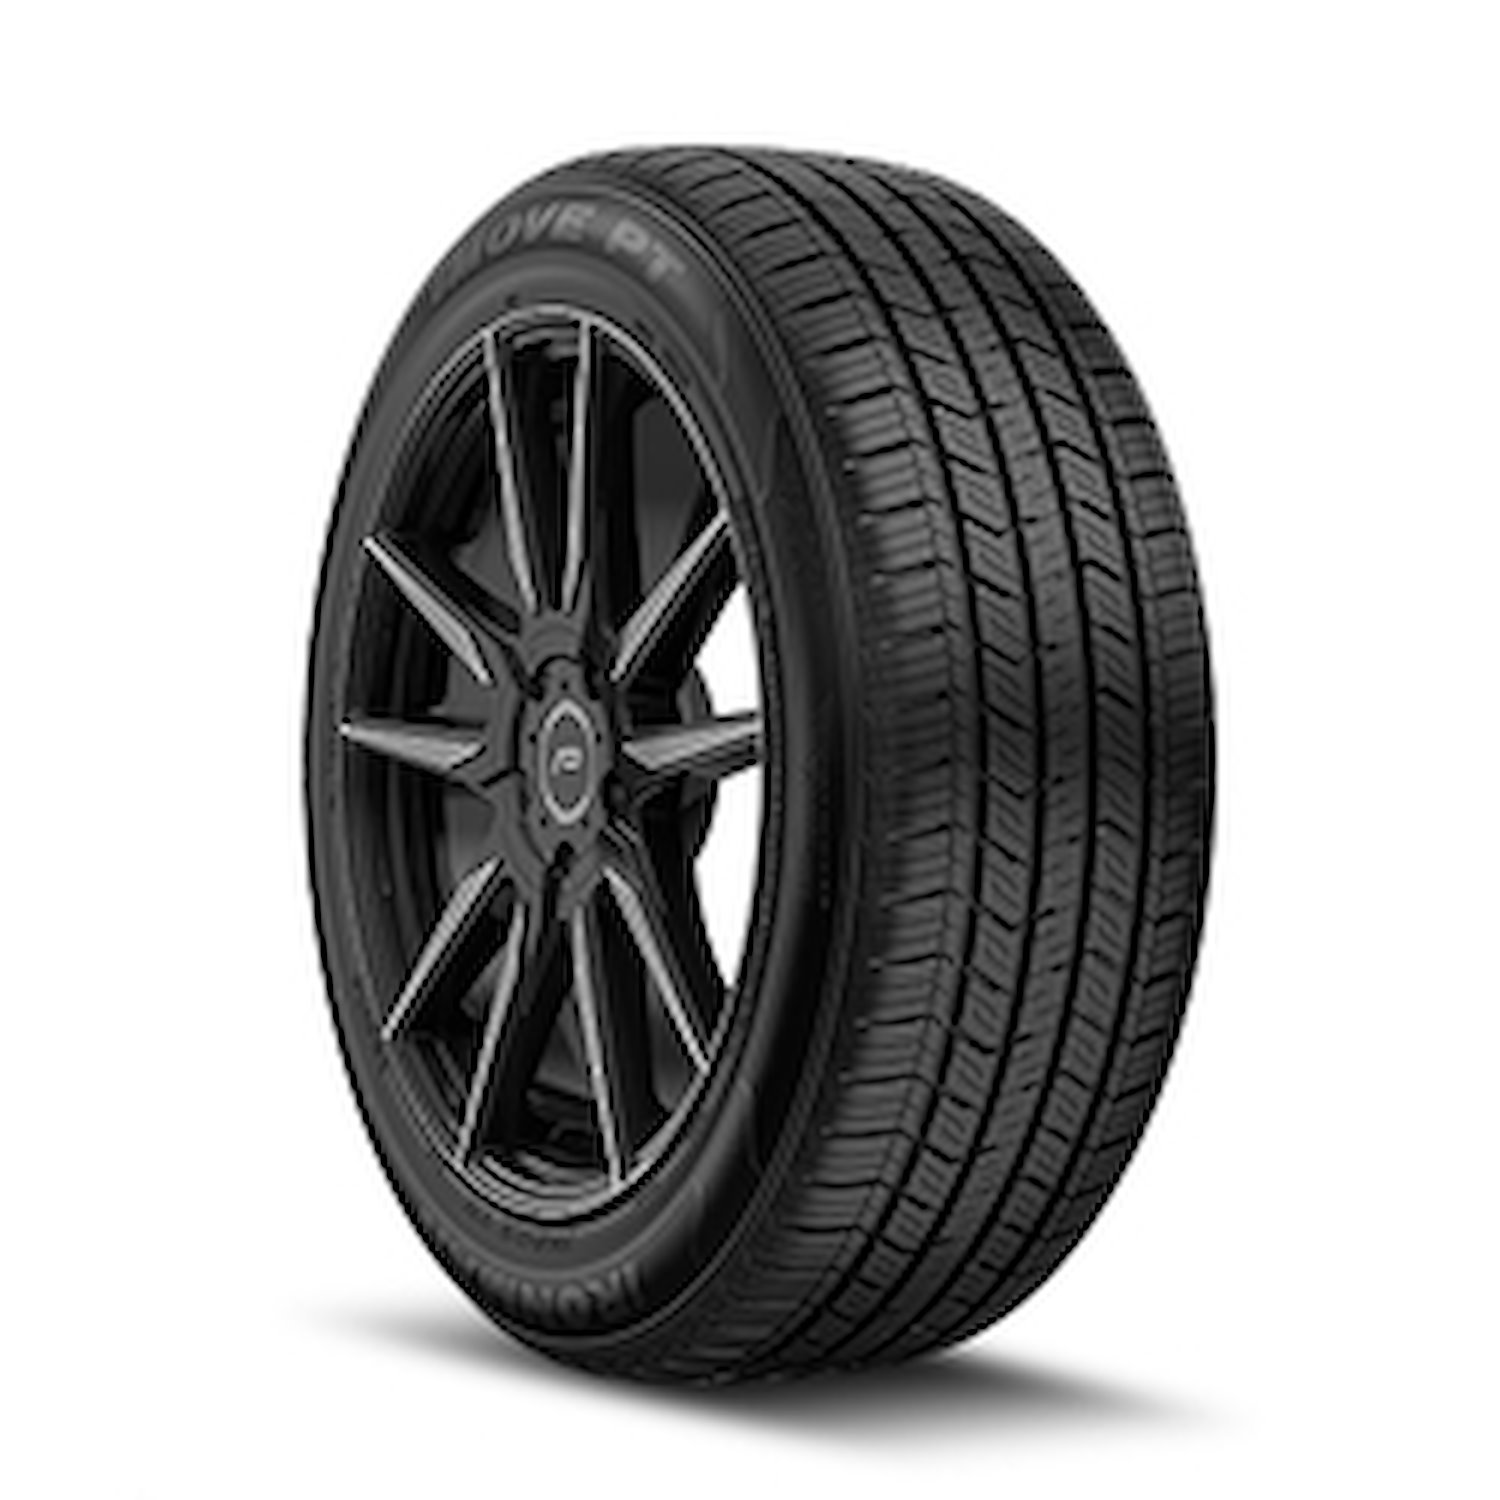 98454 iMOVE PT Tire, 195/65R15, 91H